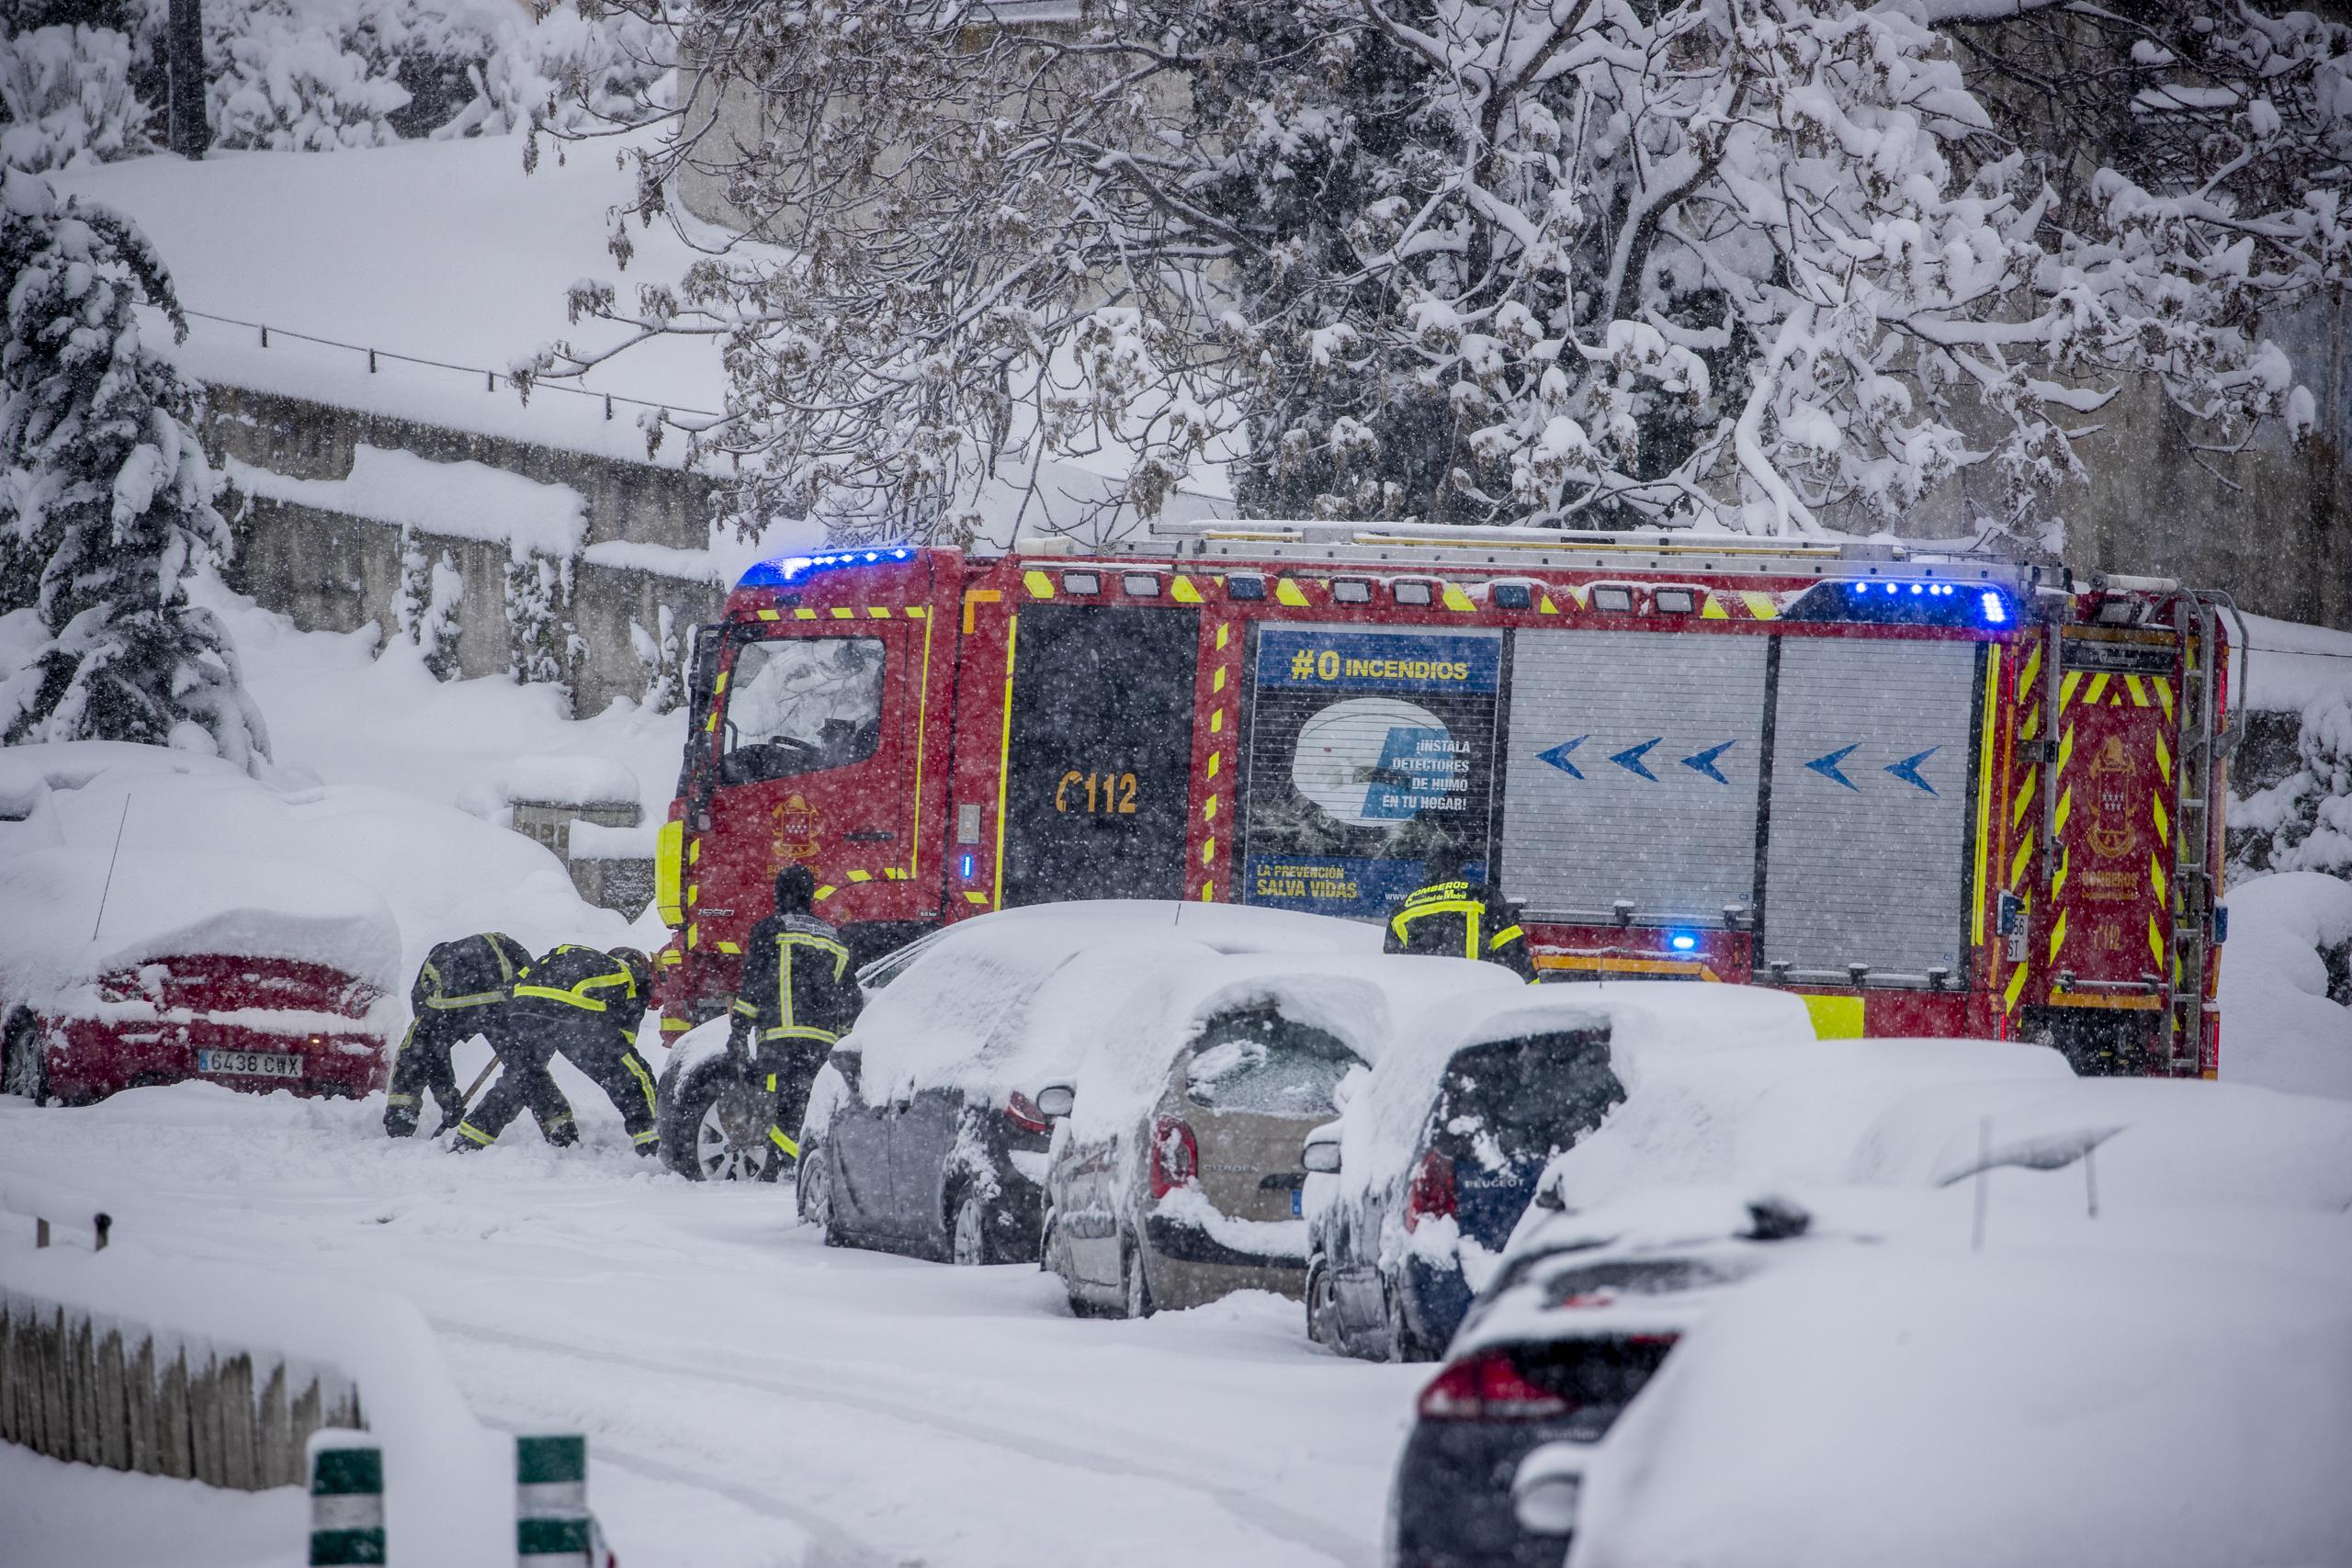 Bomberos intentan remover la nieve de un auto en Rivas Vaciamadrid, España. Una nevada poco usual cubrió el país dejando a miles atrapados en sus carros.